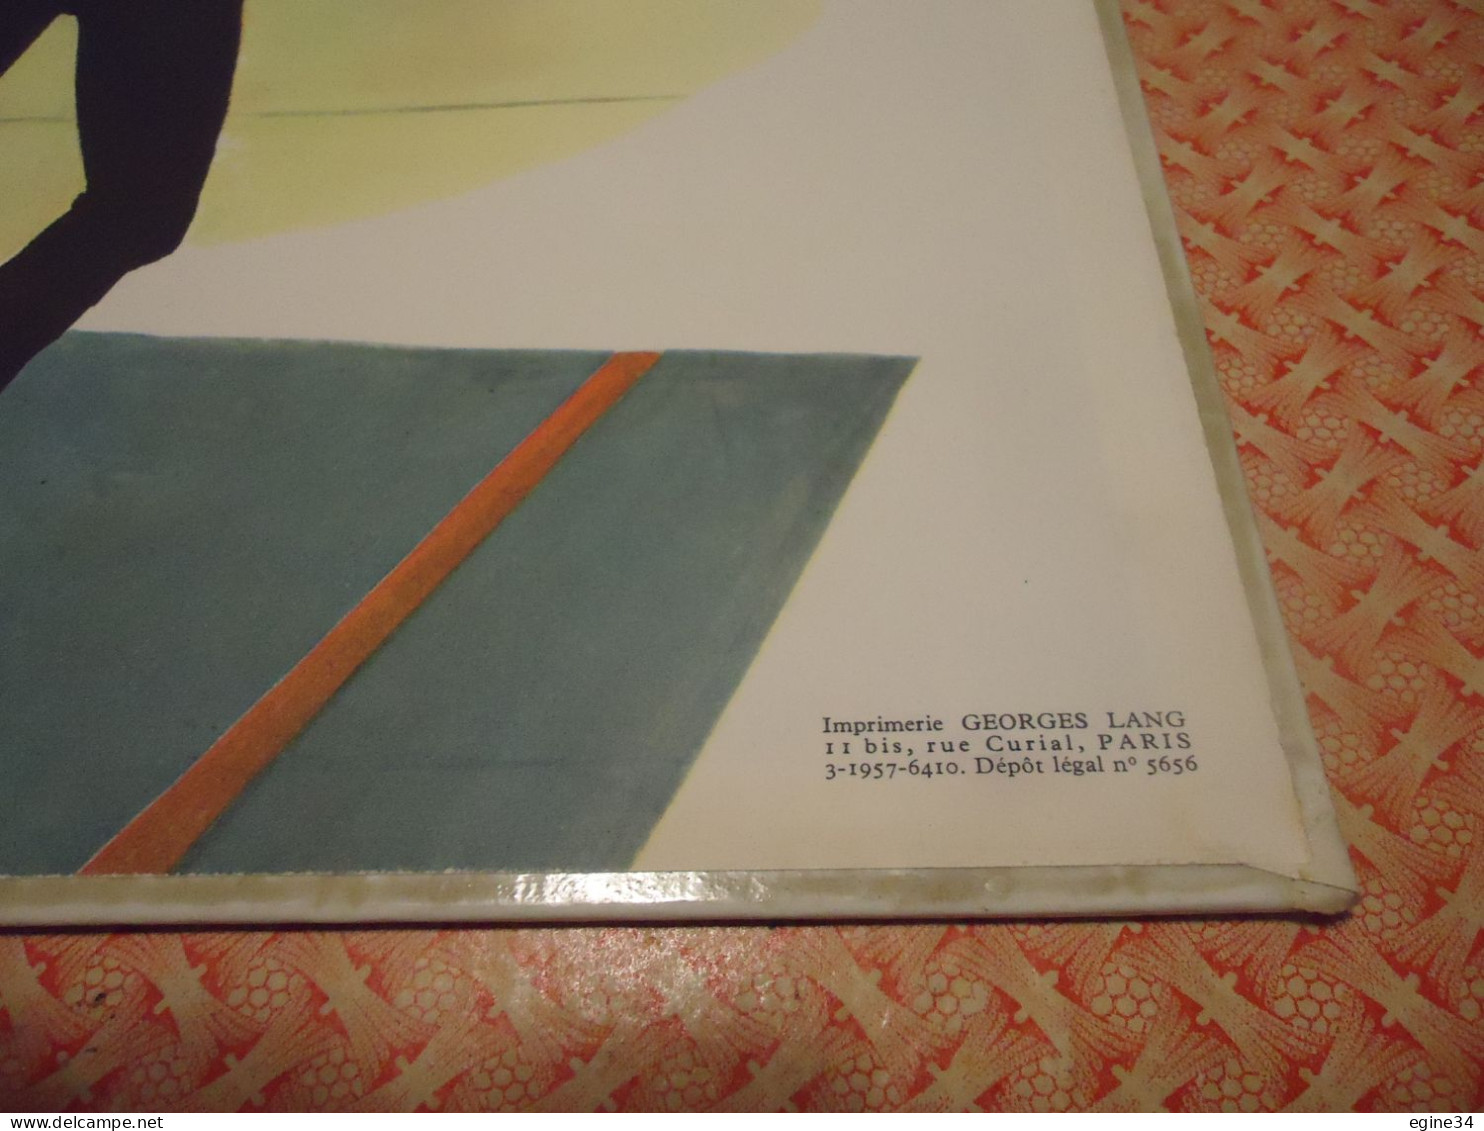 Grands Albums Hachette - Contes De Perrault -Le Chat Botté La Belle Au Bois Dormant - Images De Paul Durand  - 1957 - Contes